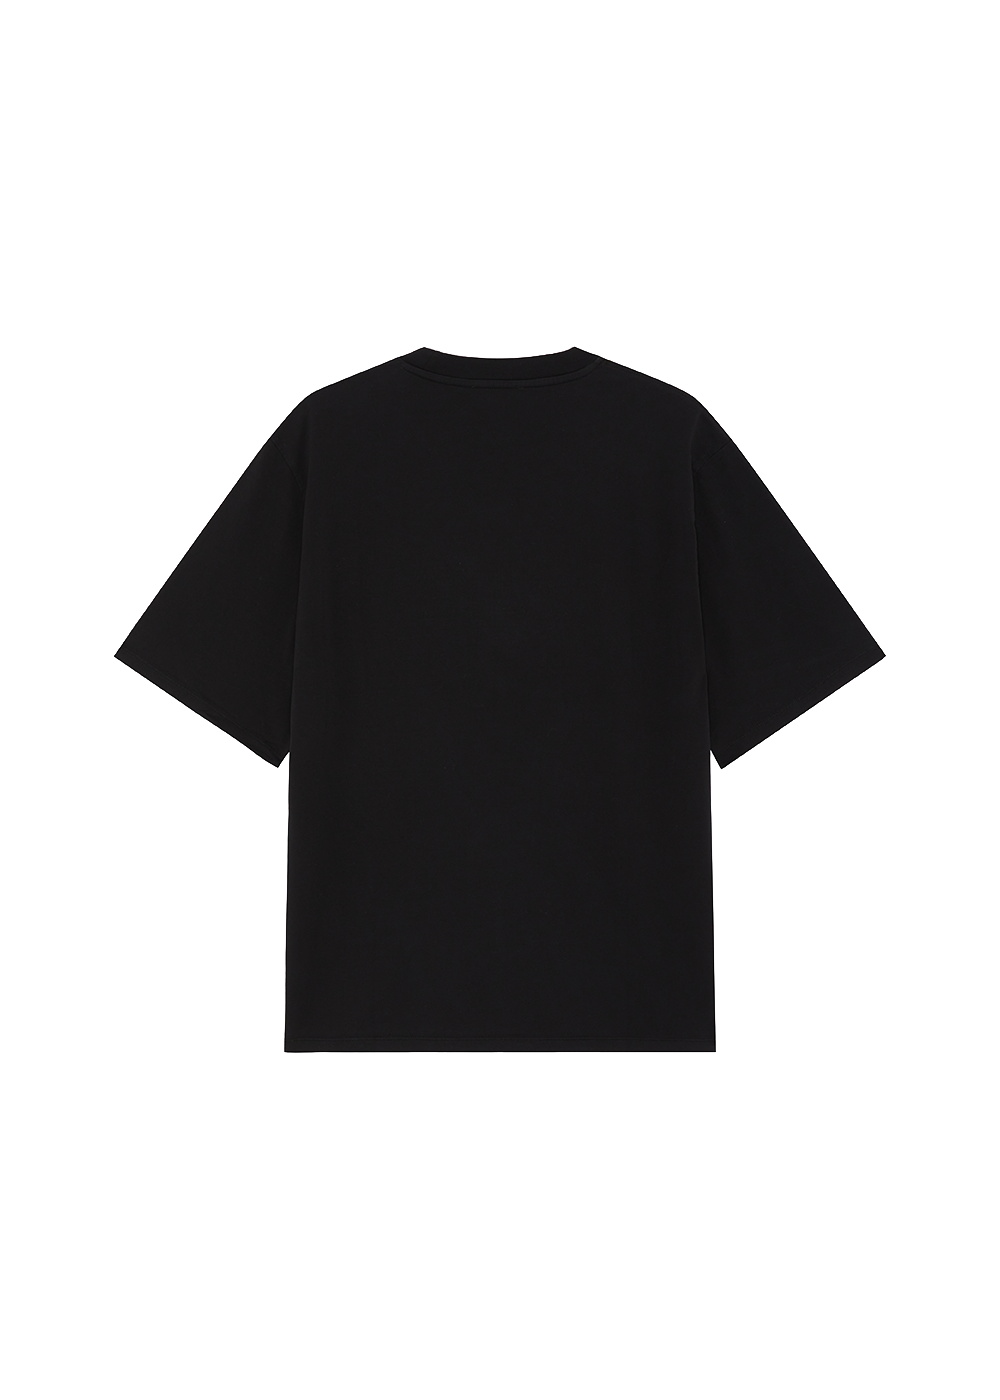 AGR - Diamante T-shirt - Packshot - Back